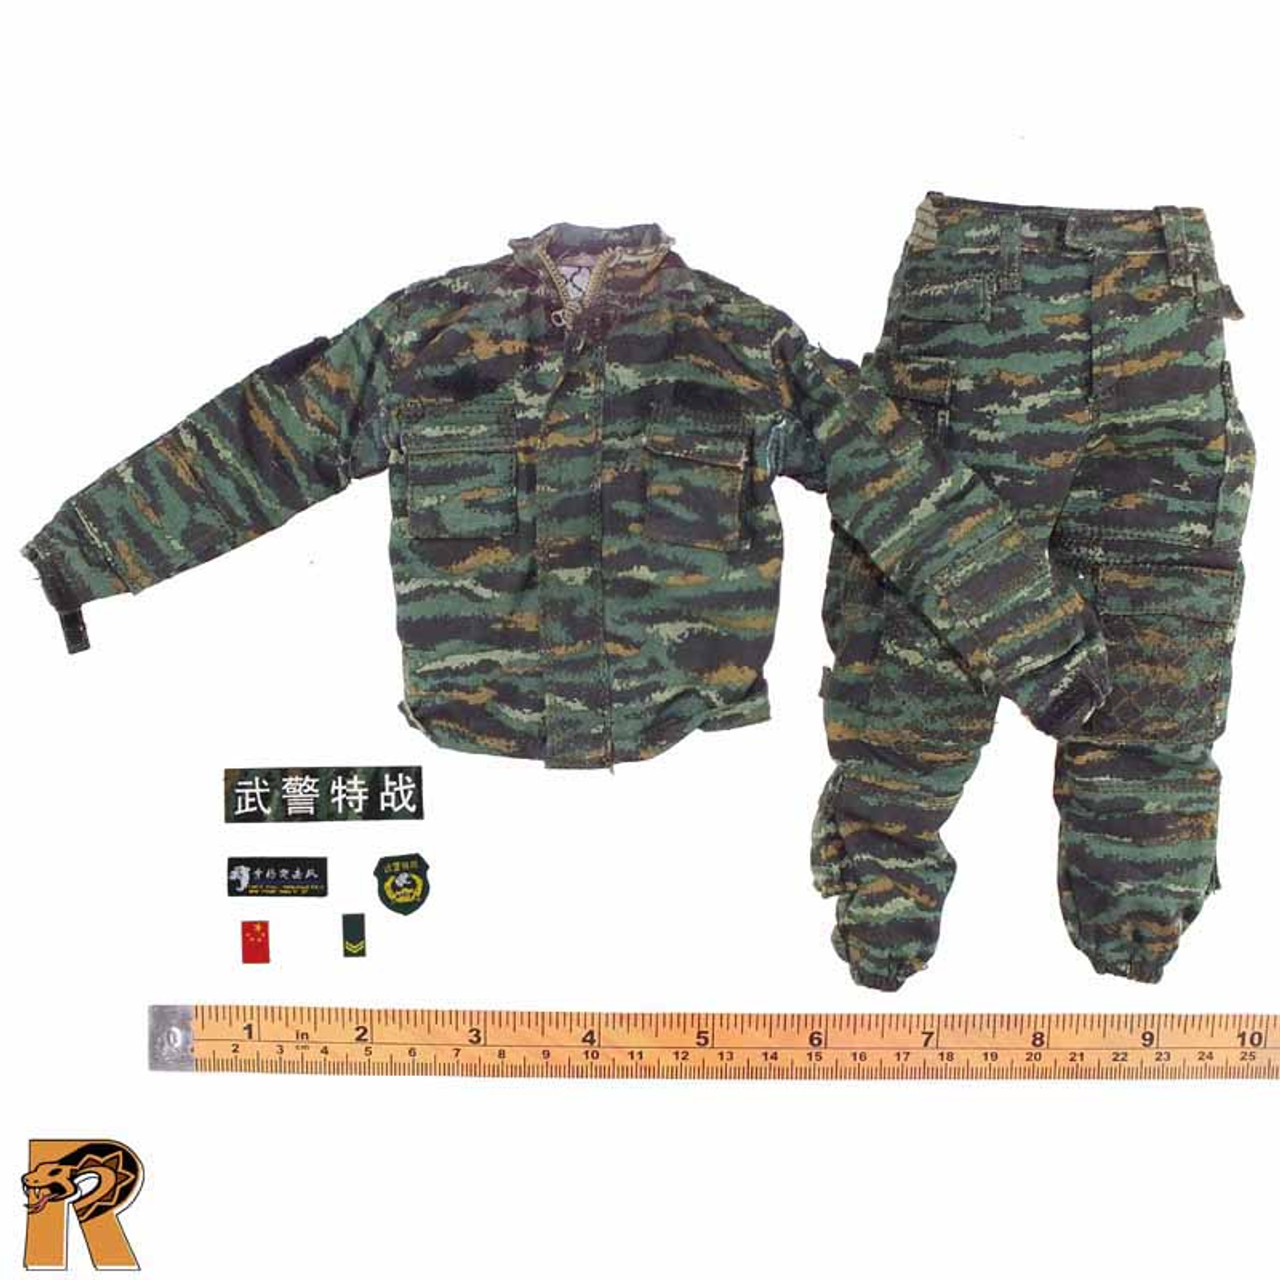 PAP Snow Leopard  - Camo Uniform - 1/6 Scale